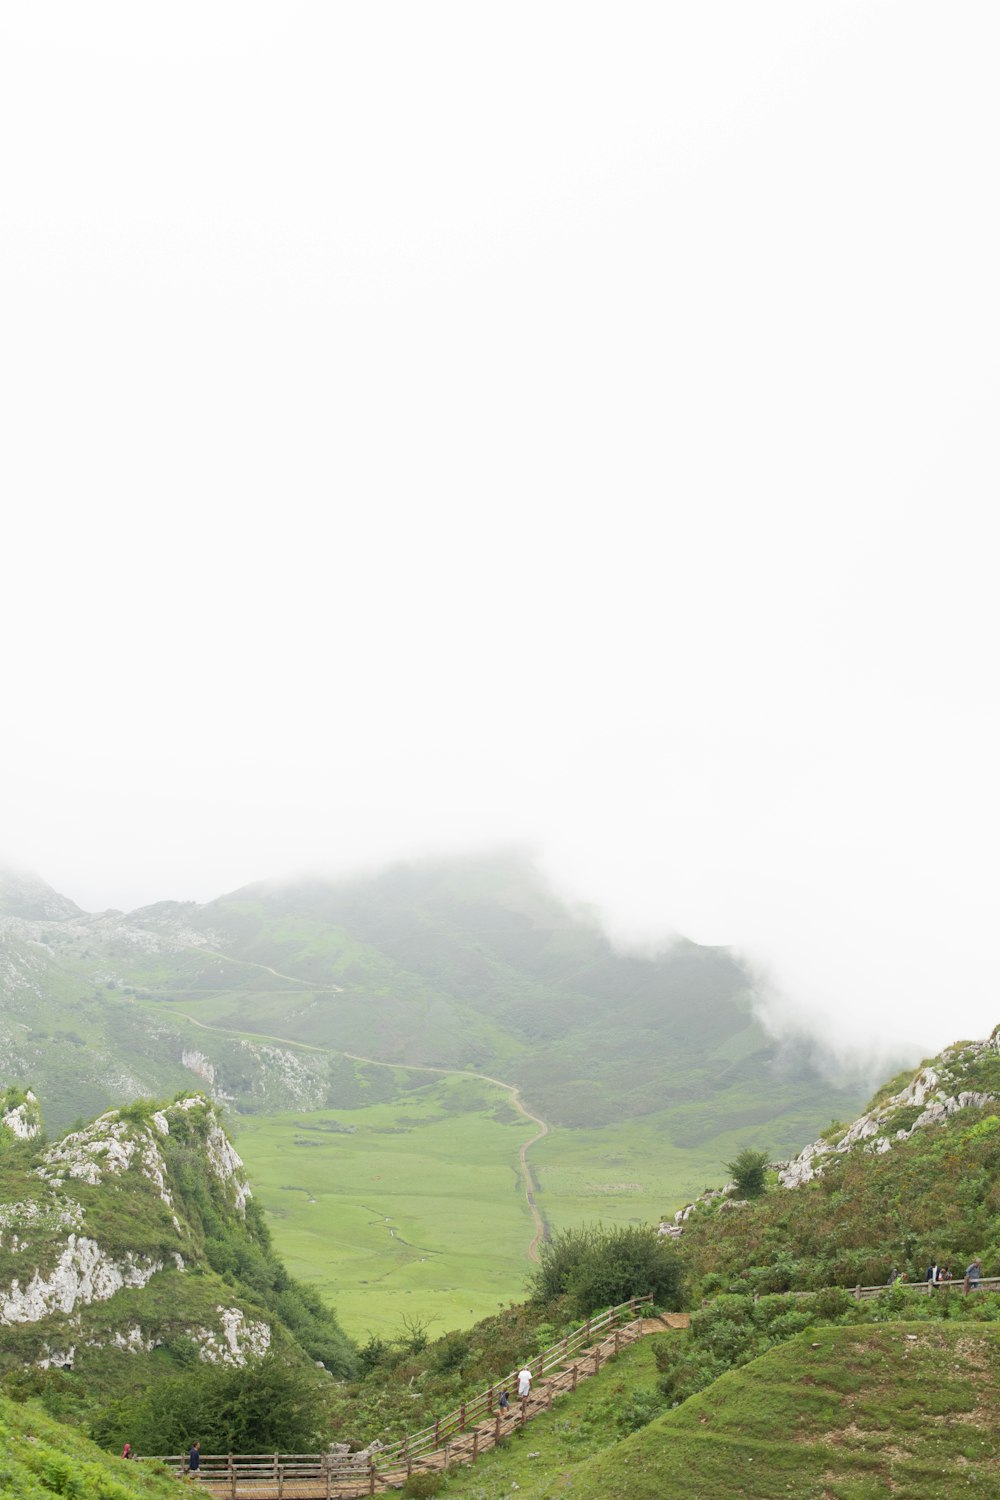 Un paio di pecore in piedi sulla cima di una collina verde lussureggiante